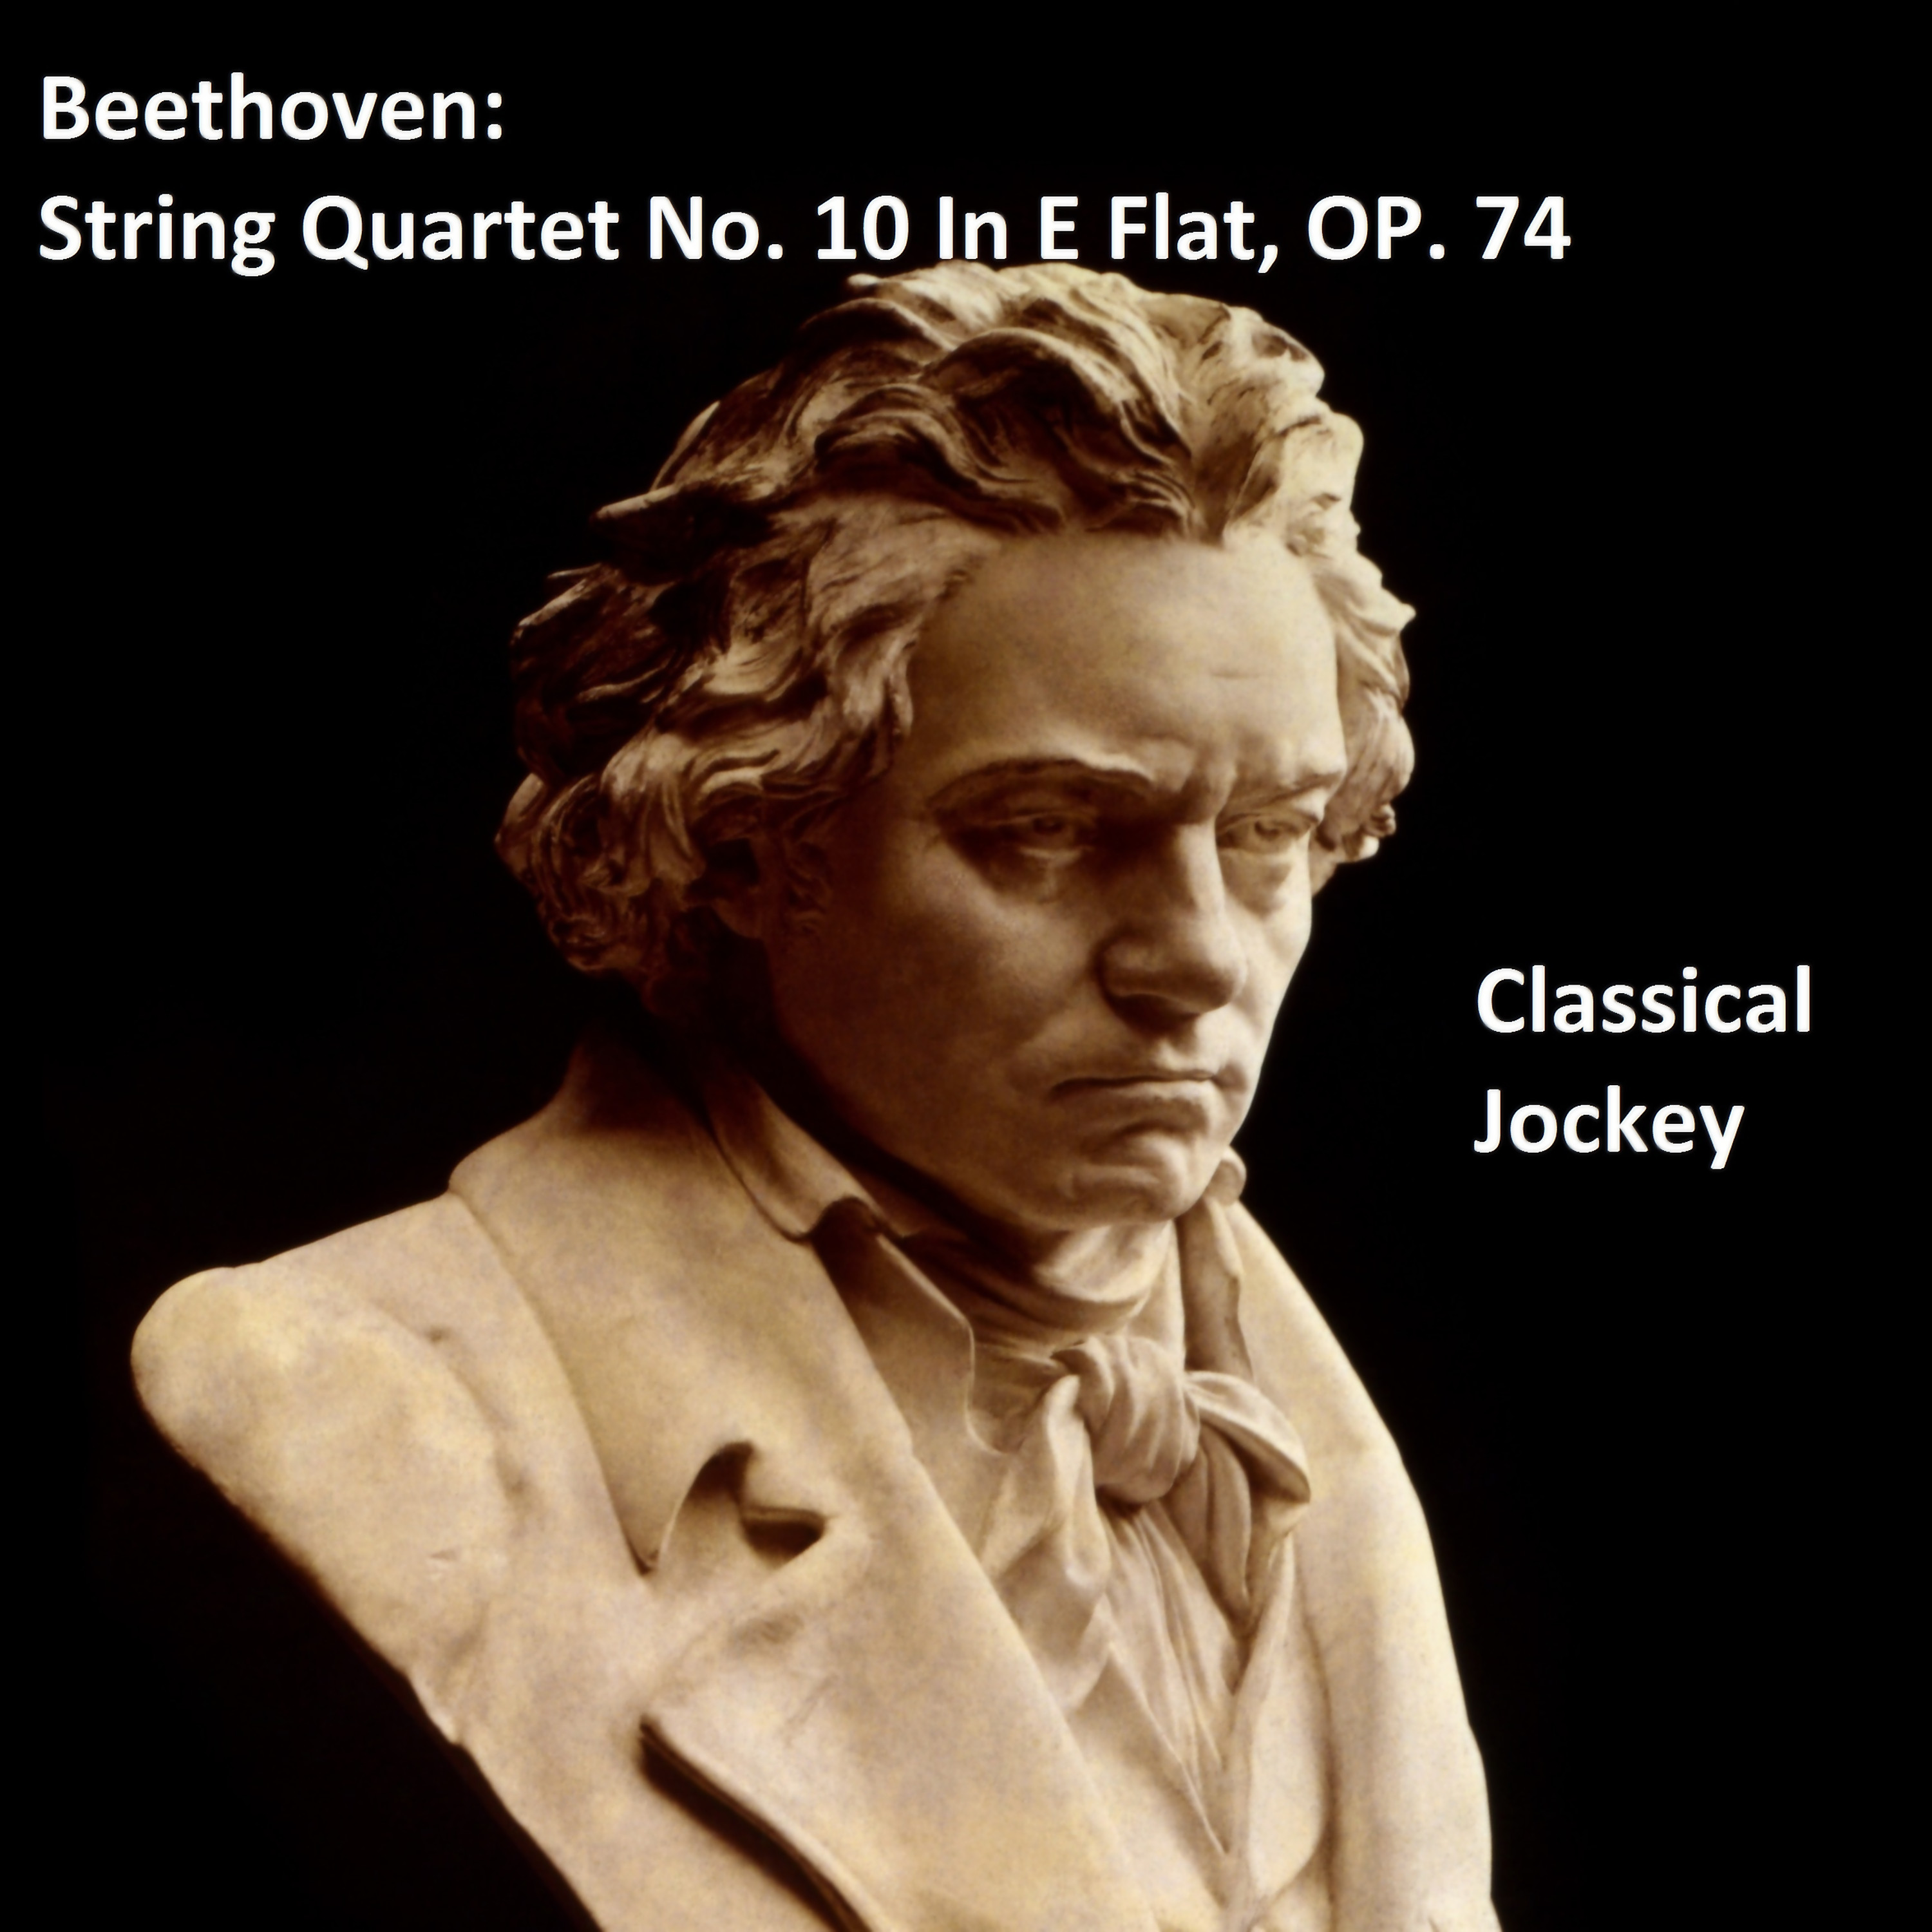 Beethoven: String Quartet No. 10 In E Flat, Op. 74 - Poco adagio - Allegro